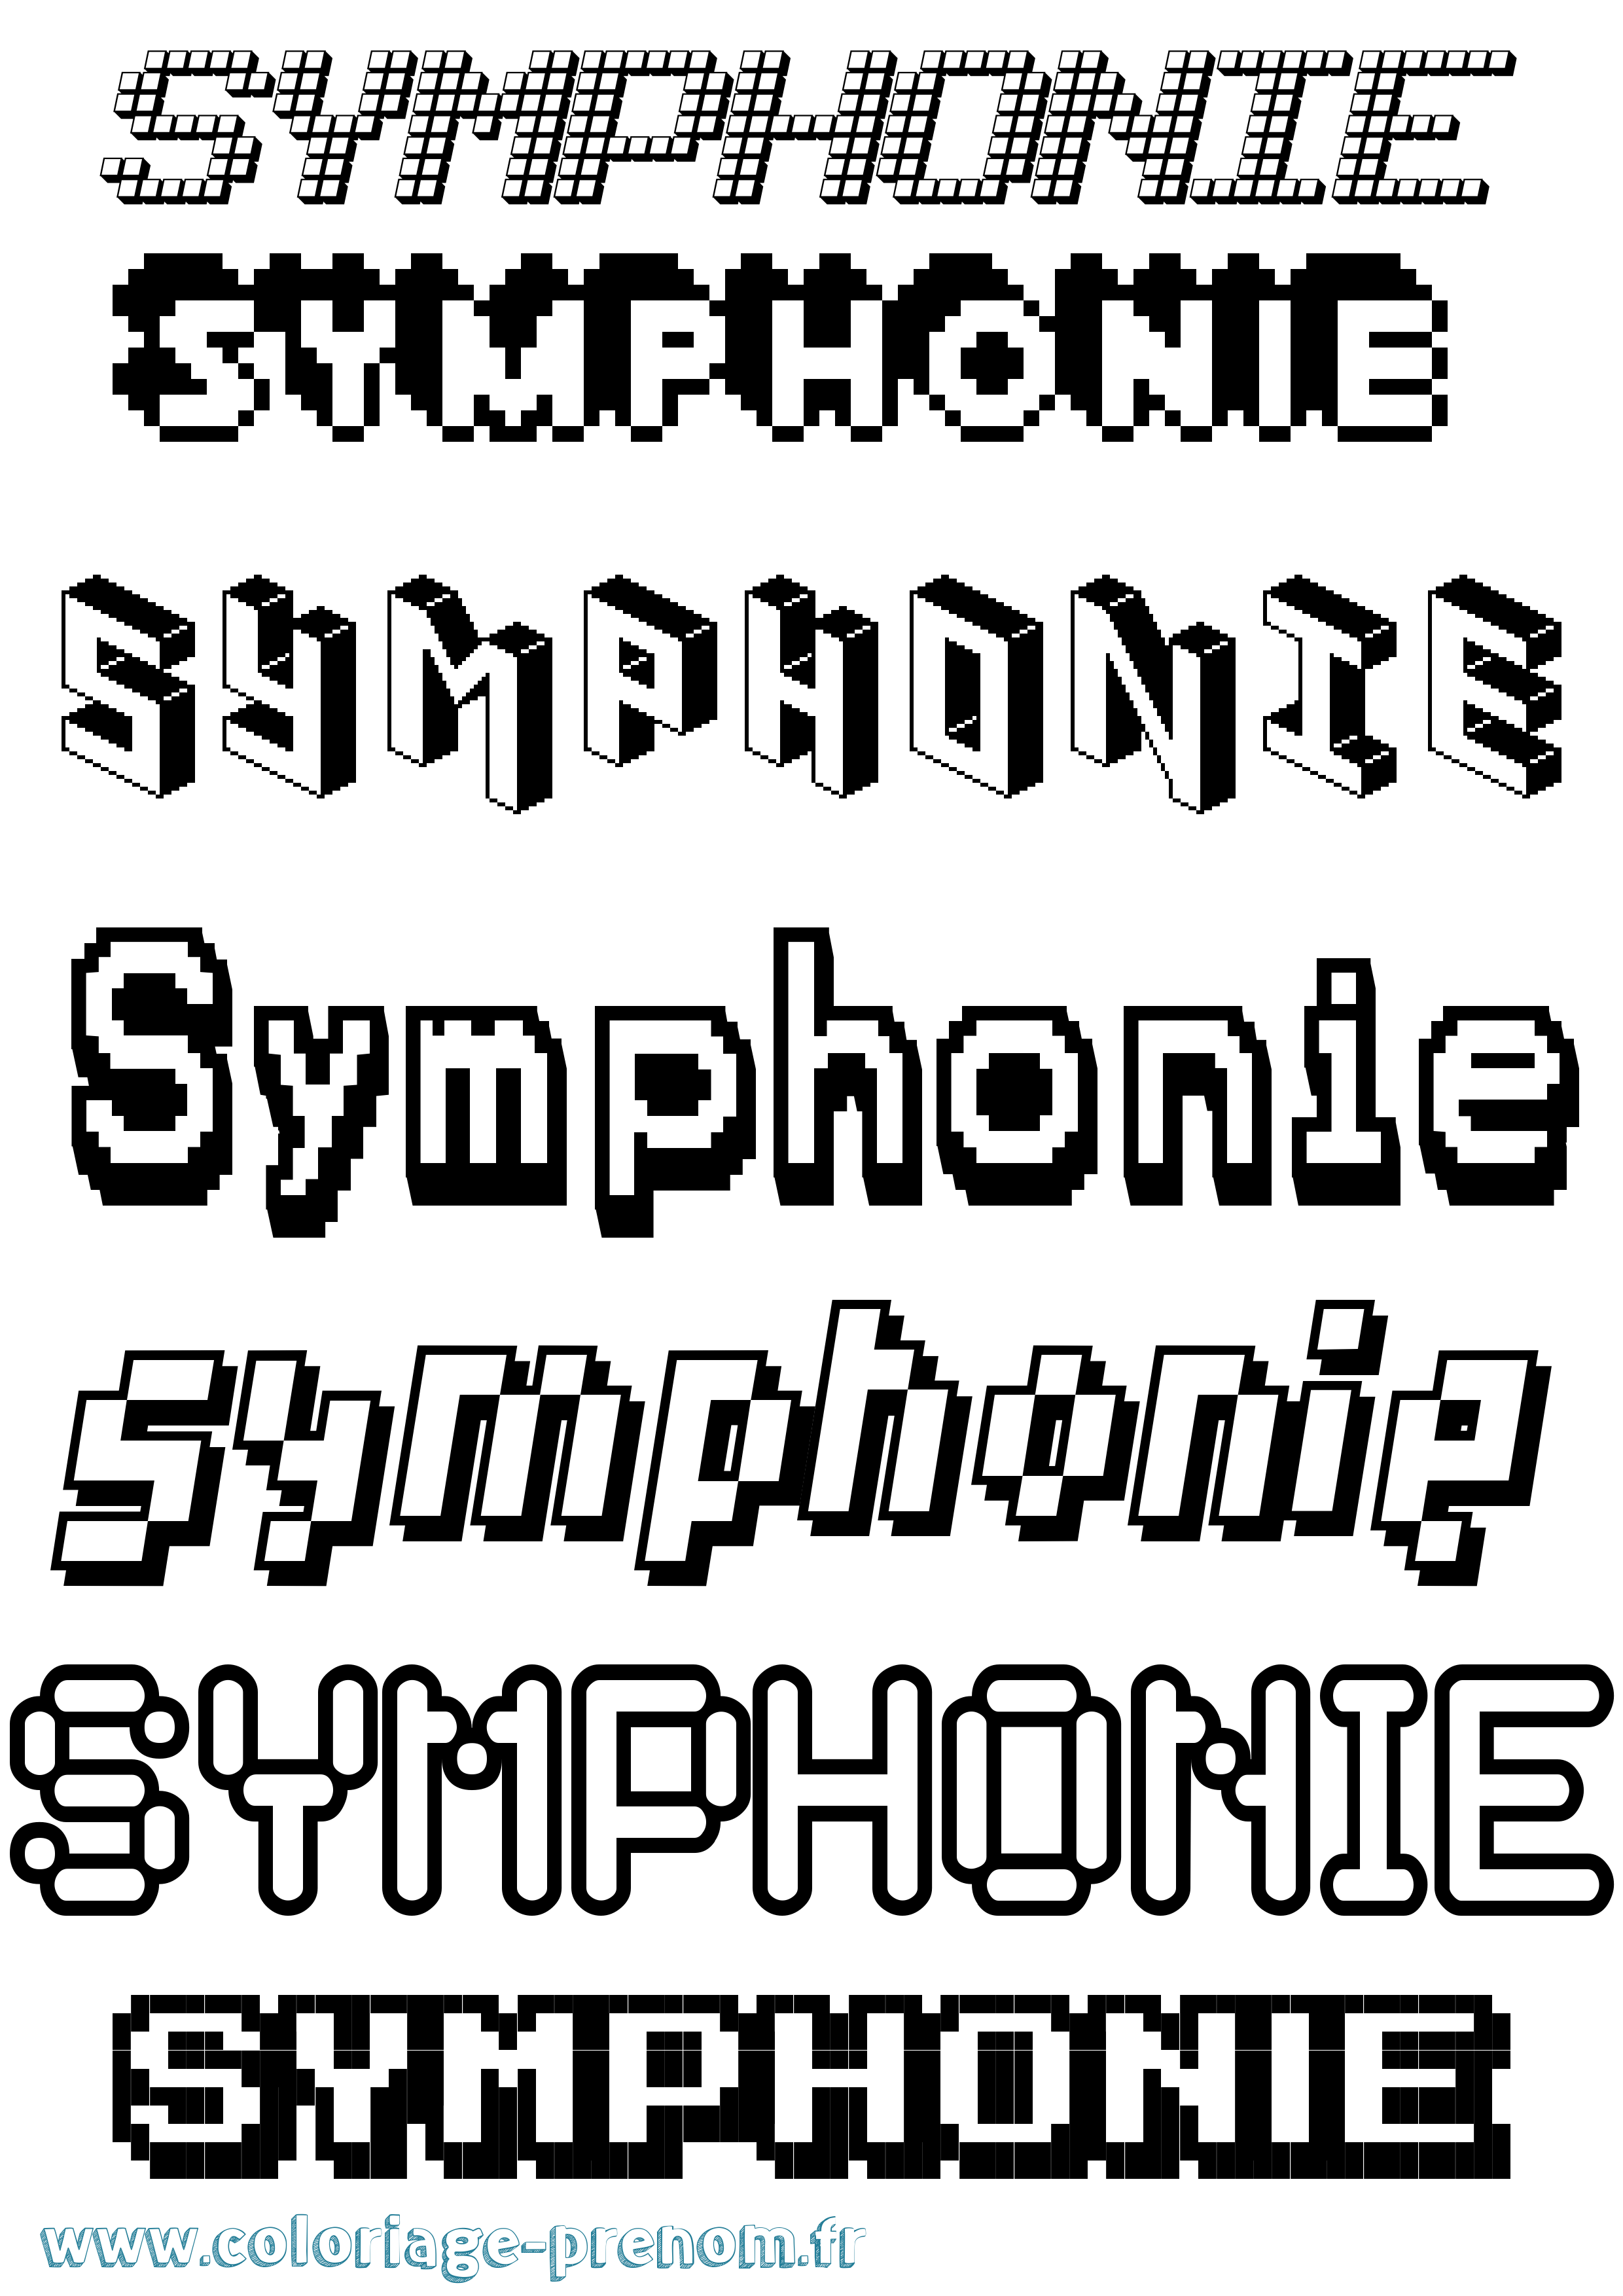 Coloriage prénom Symphonie Pixel